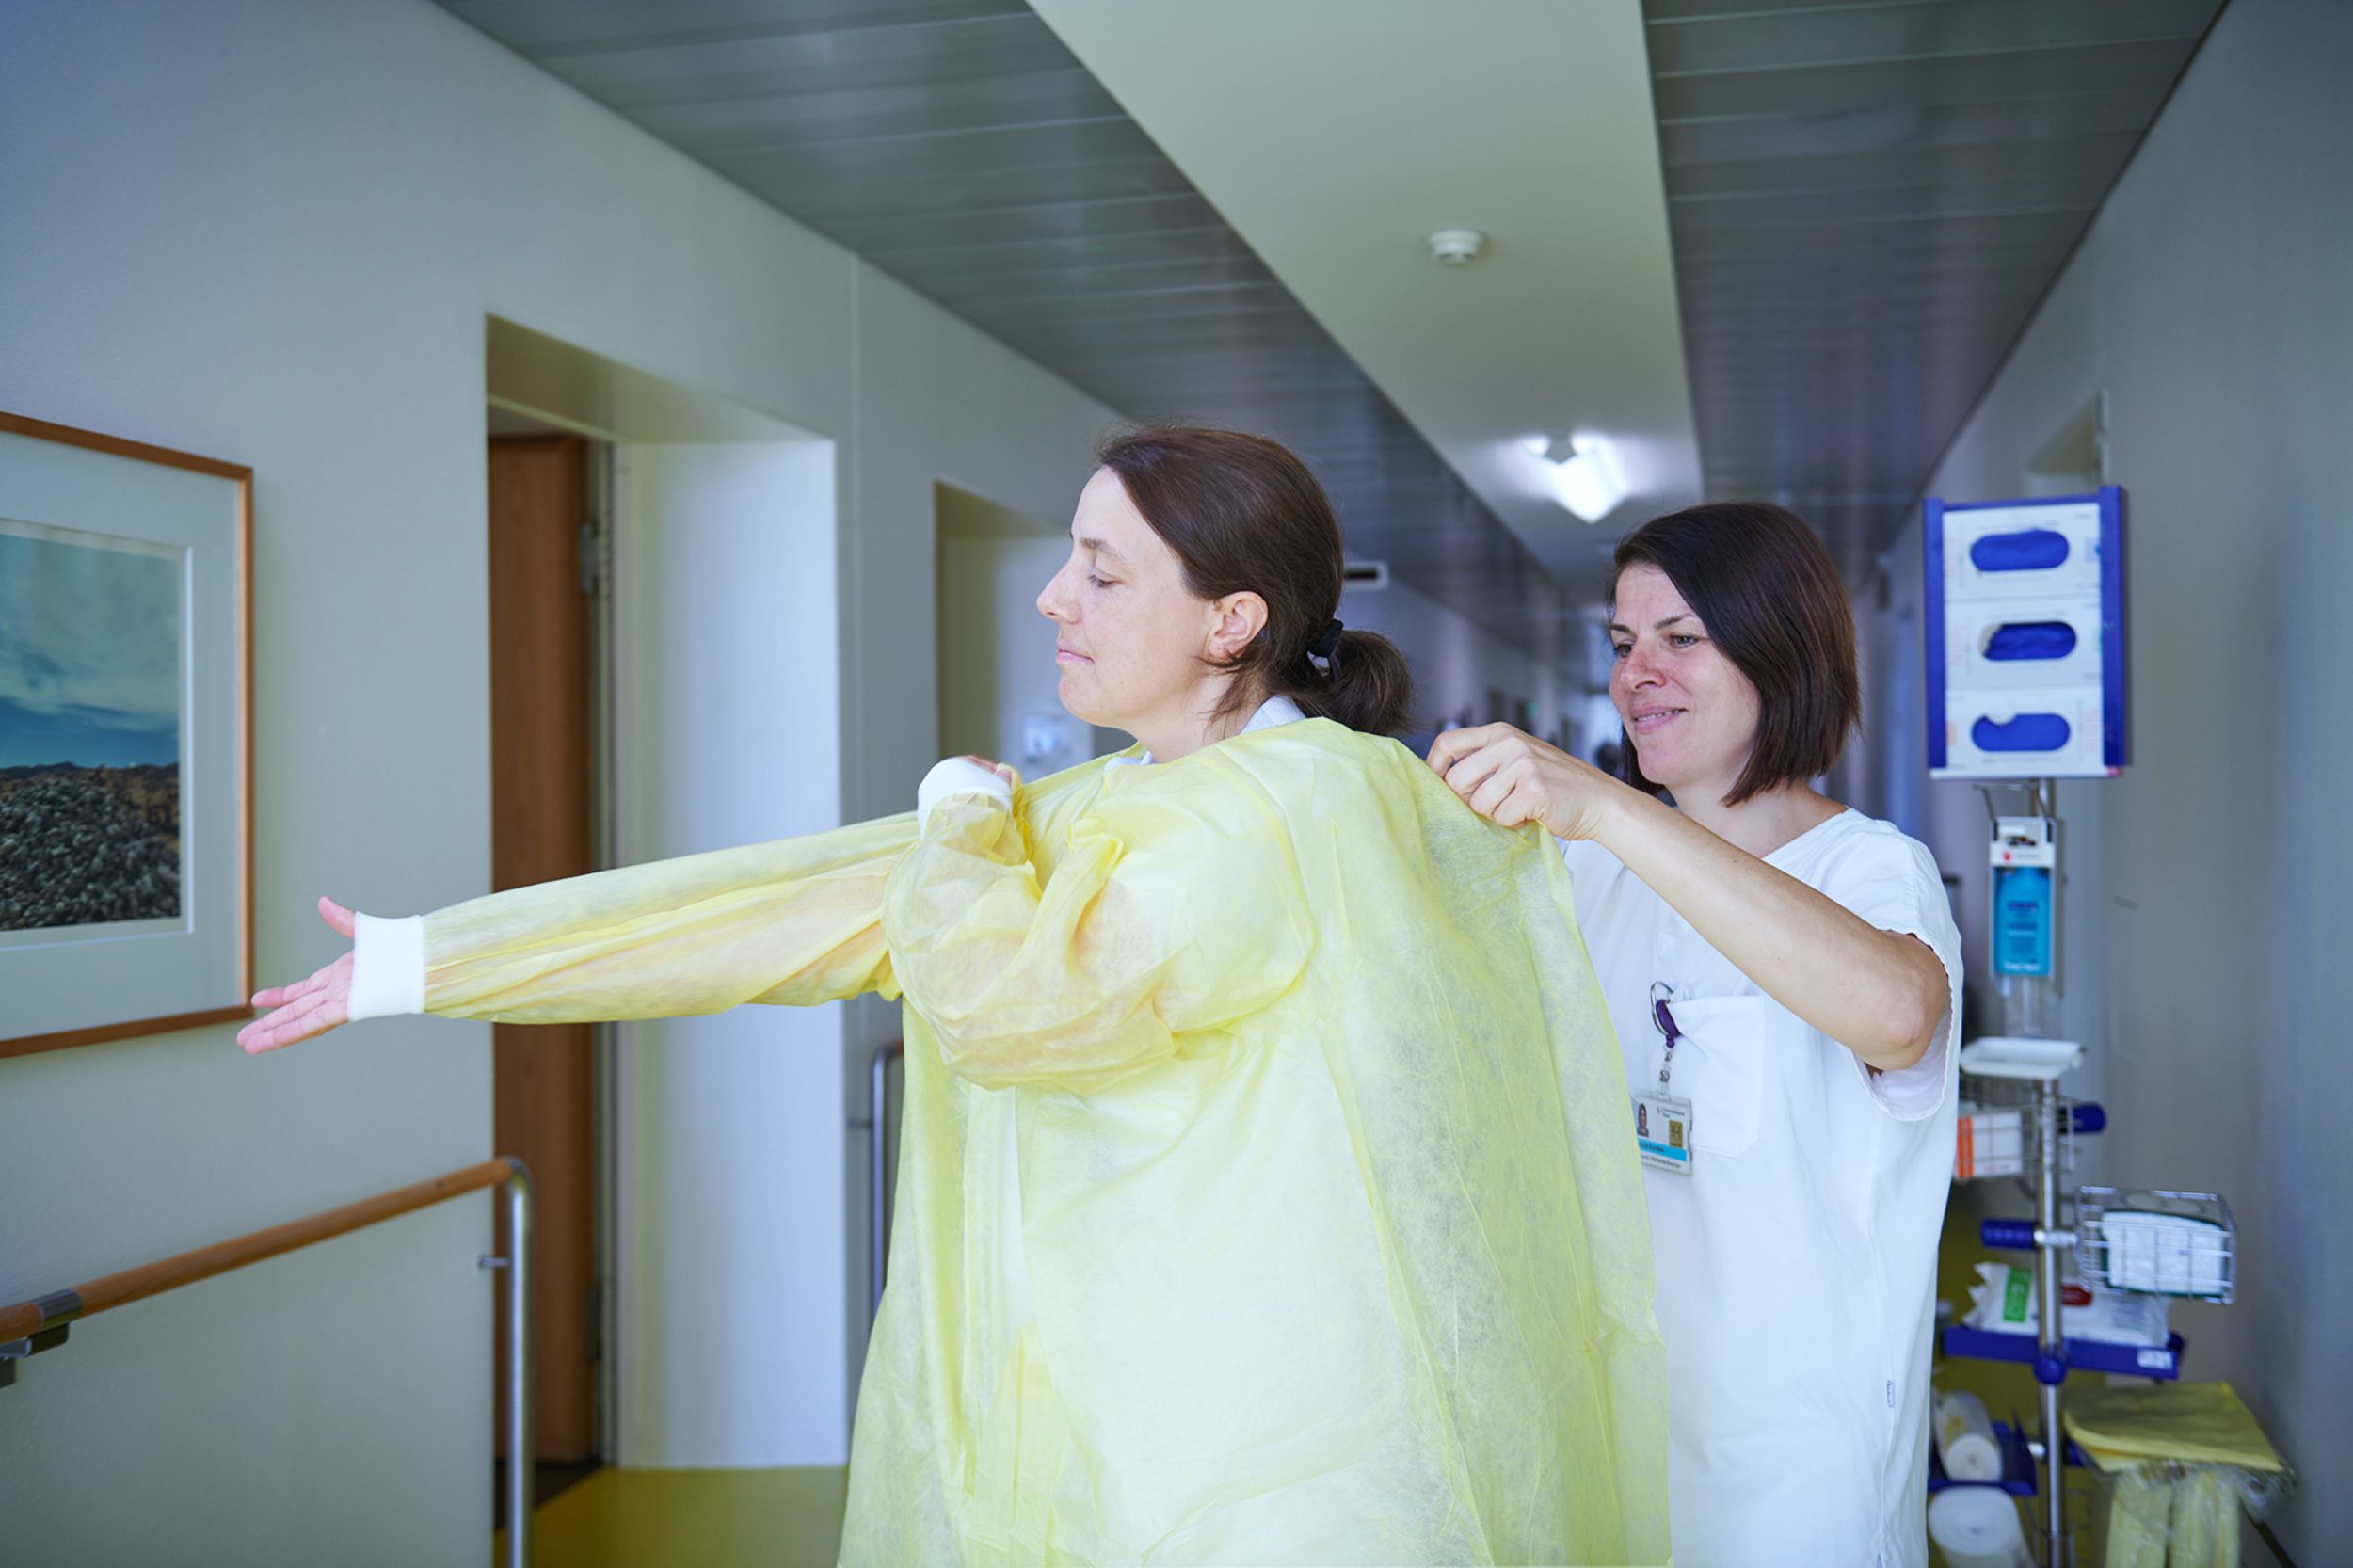 Zwei Mitarbeiterinnen der Spitalhygiene helfen sich gegenseitig beim Anlegen von Schutzkleidung